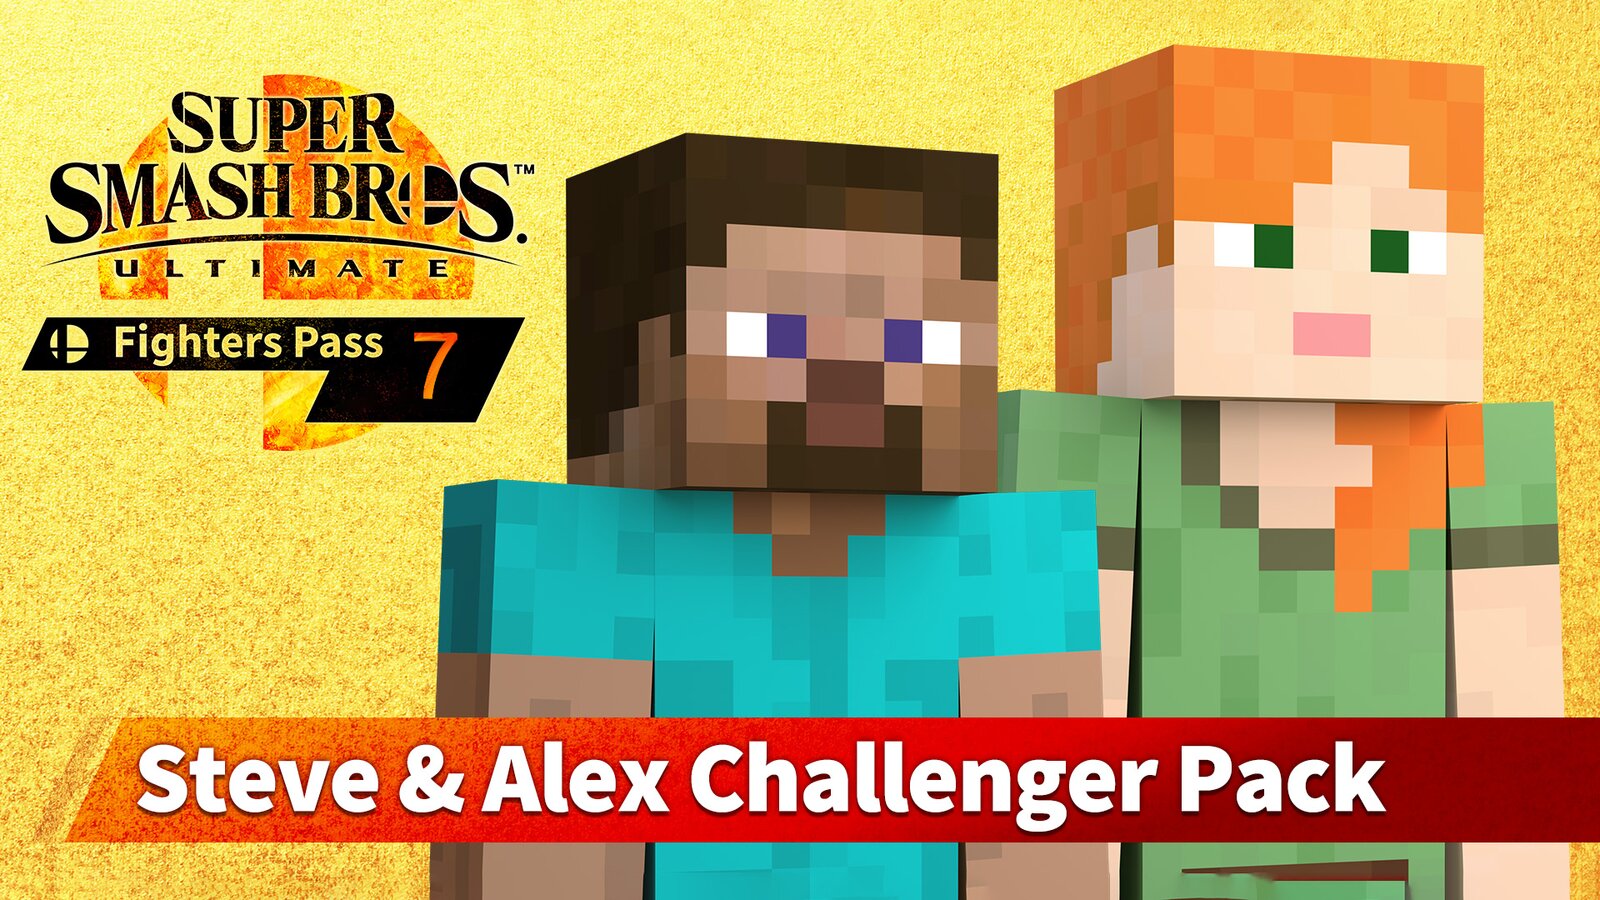 Super Smash Bros. Ultimate - Fighters Pack 7: Steve & Alex